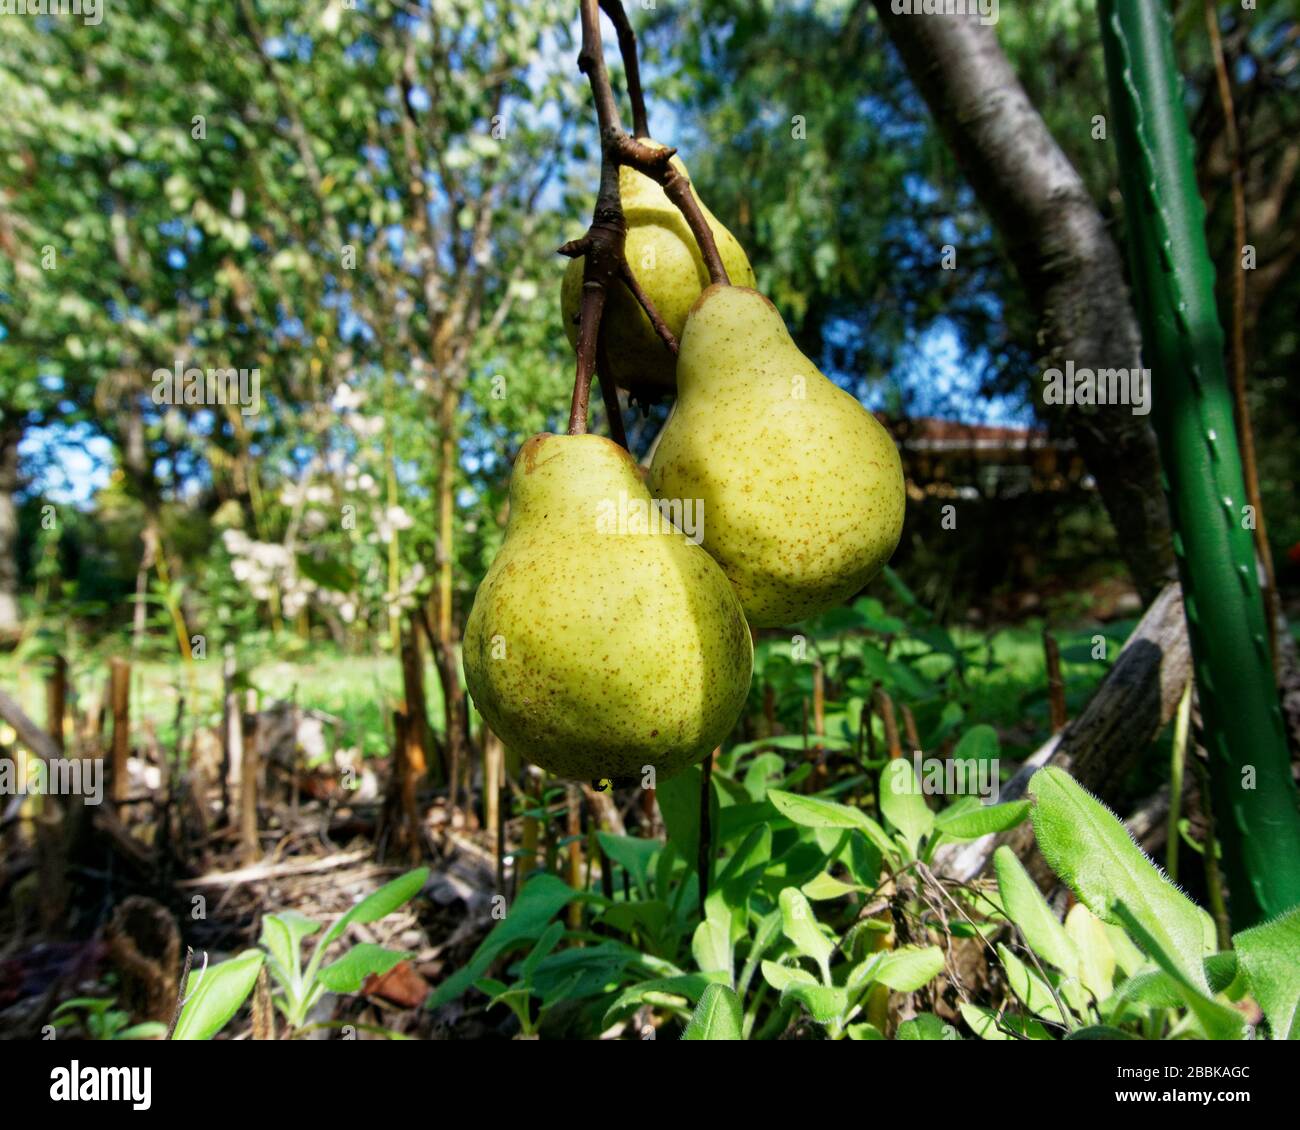 Una metáfora; la fruta baja que cuelga es la más fácil de alcanzar y de recoger. El primero en salir del árbol. Foto de stock